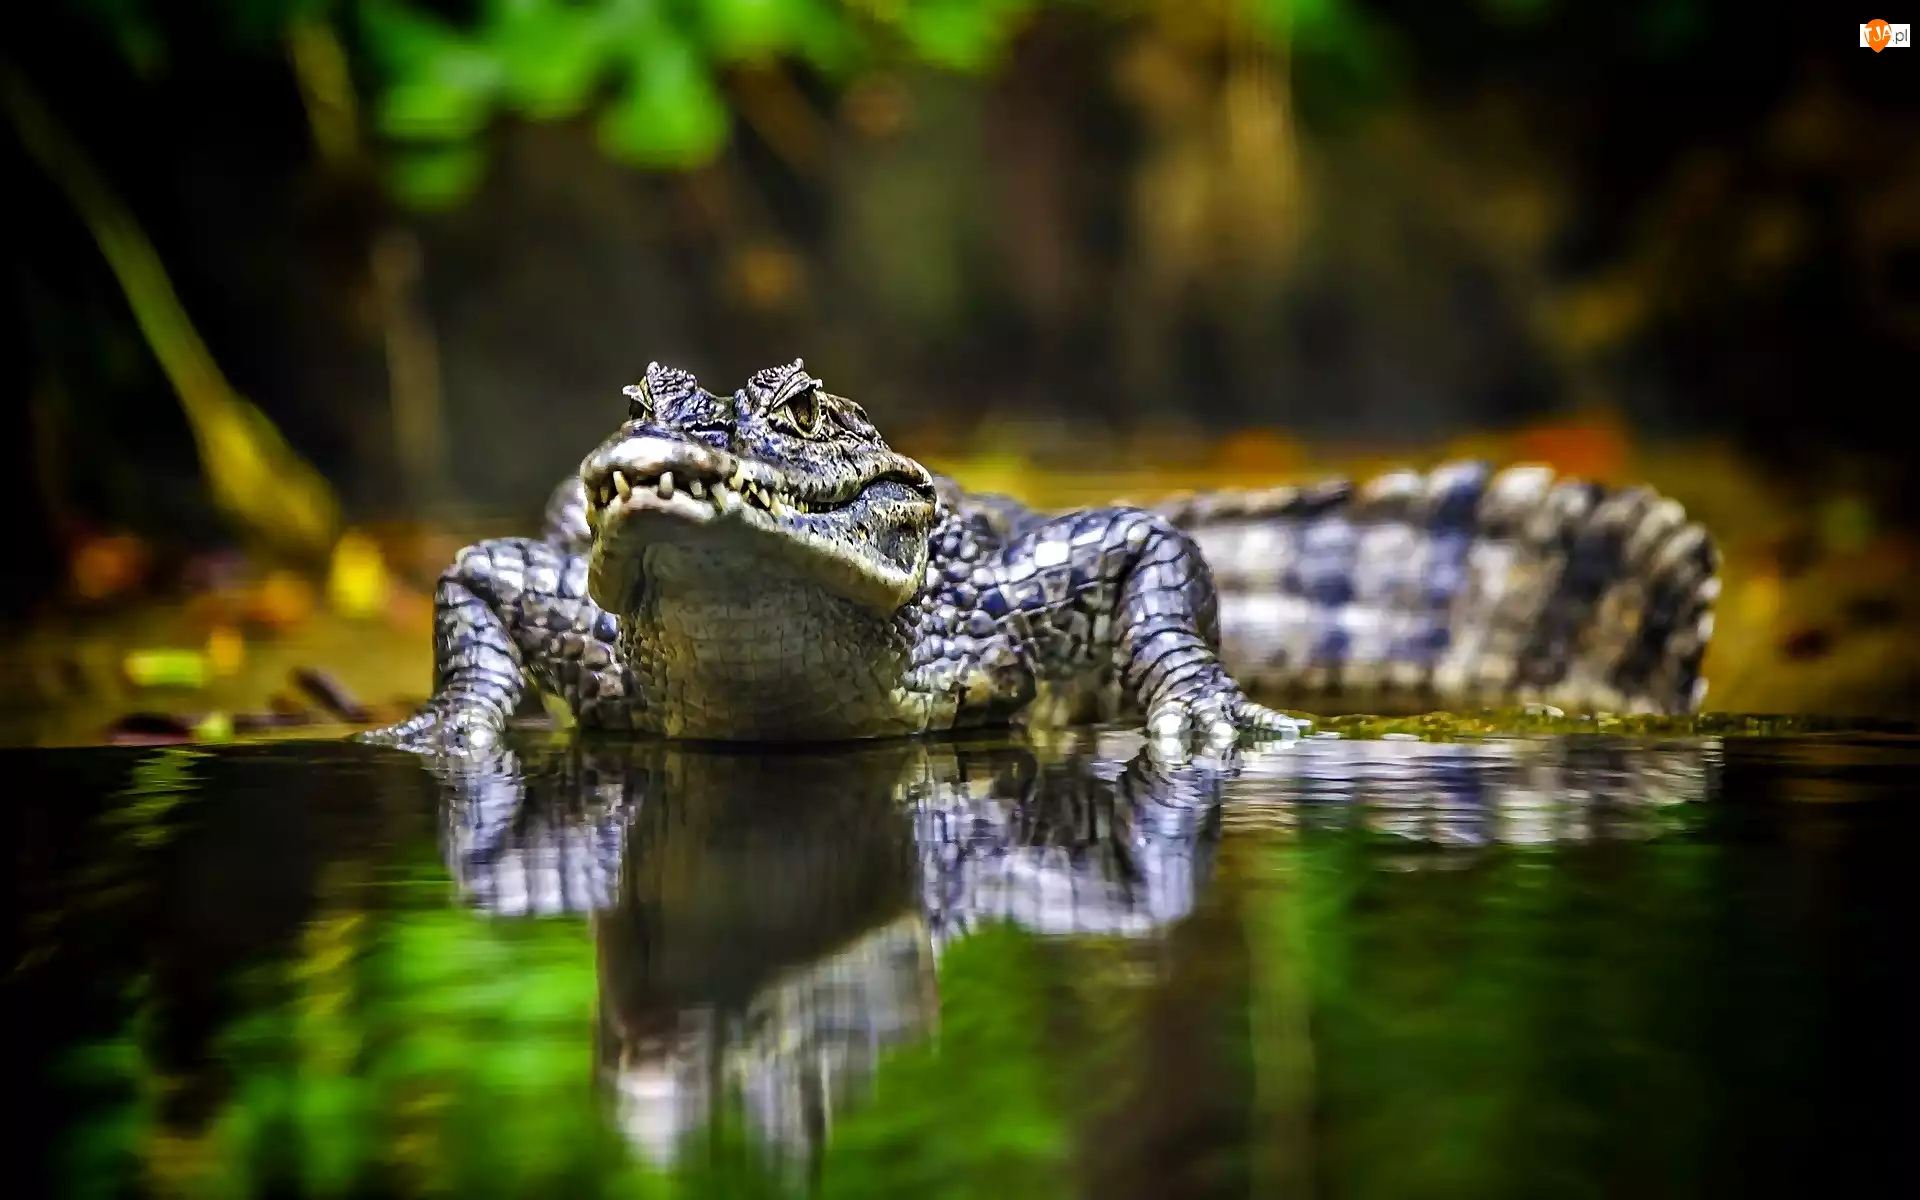 Odbicie, Krokodyl Australijski, Woda